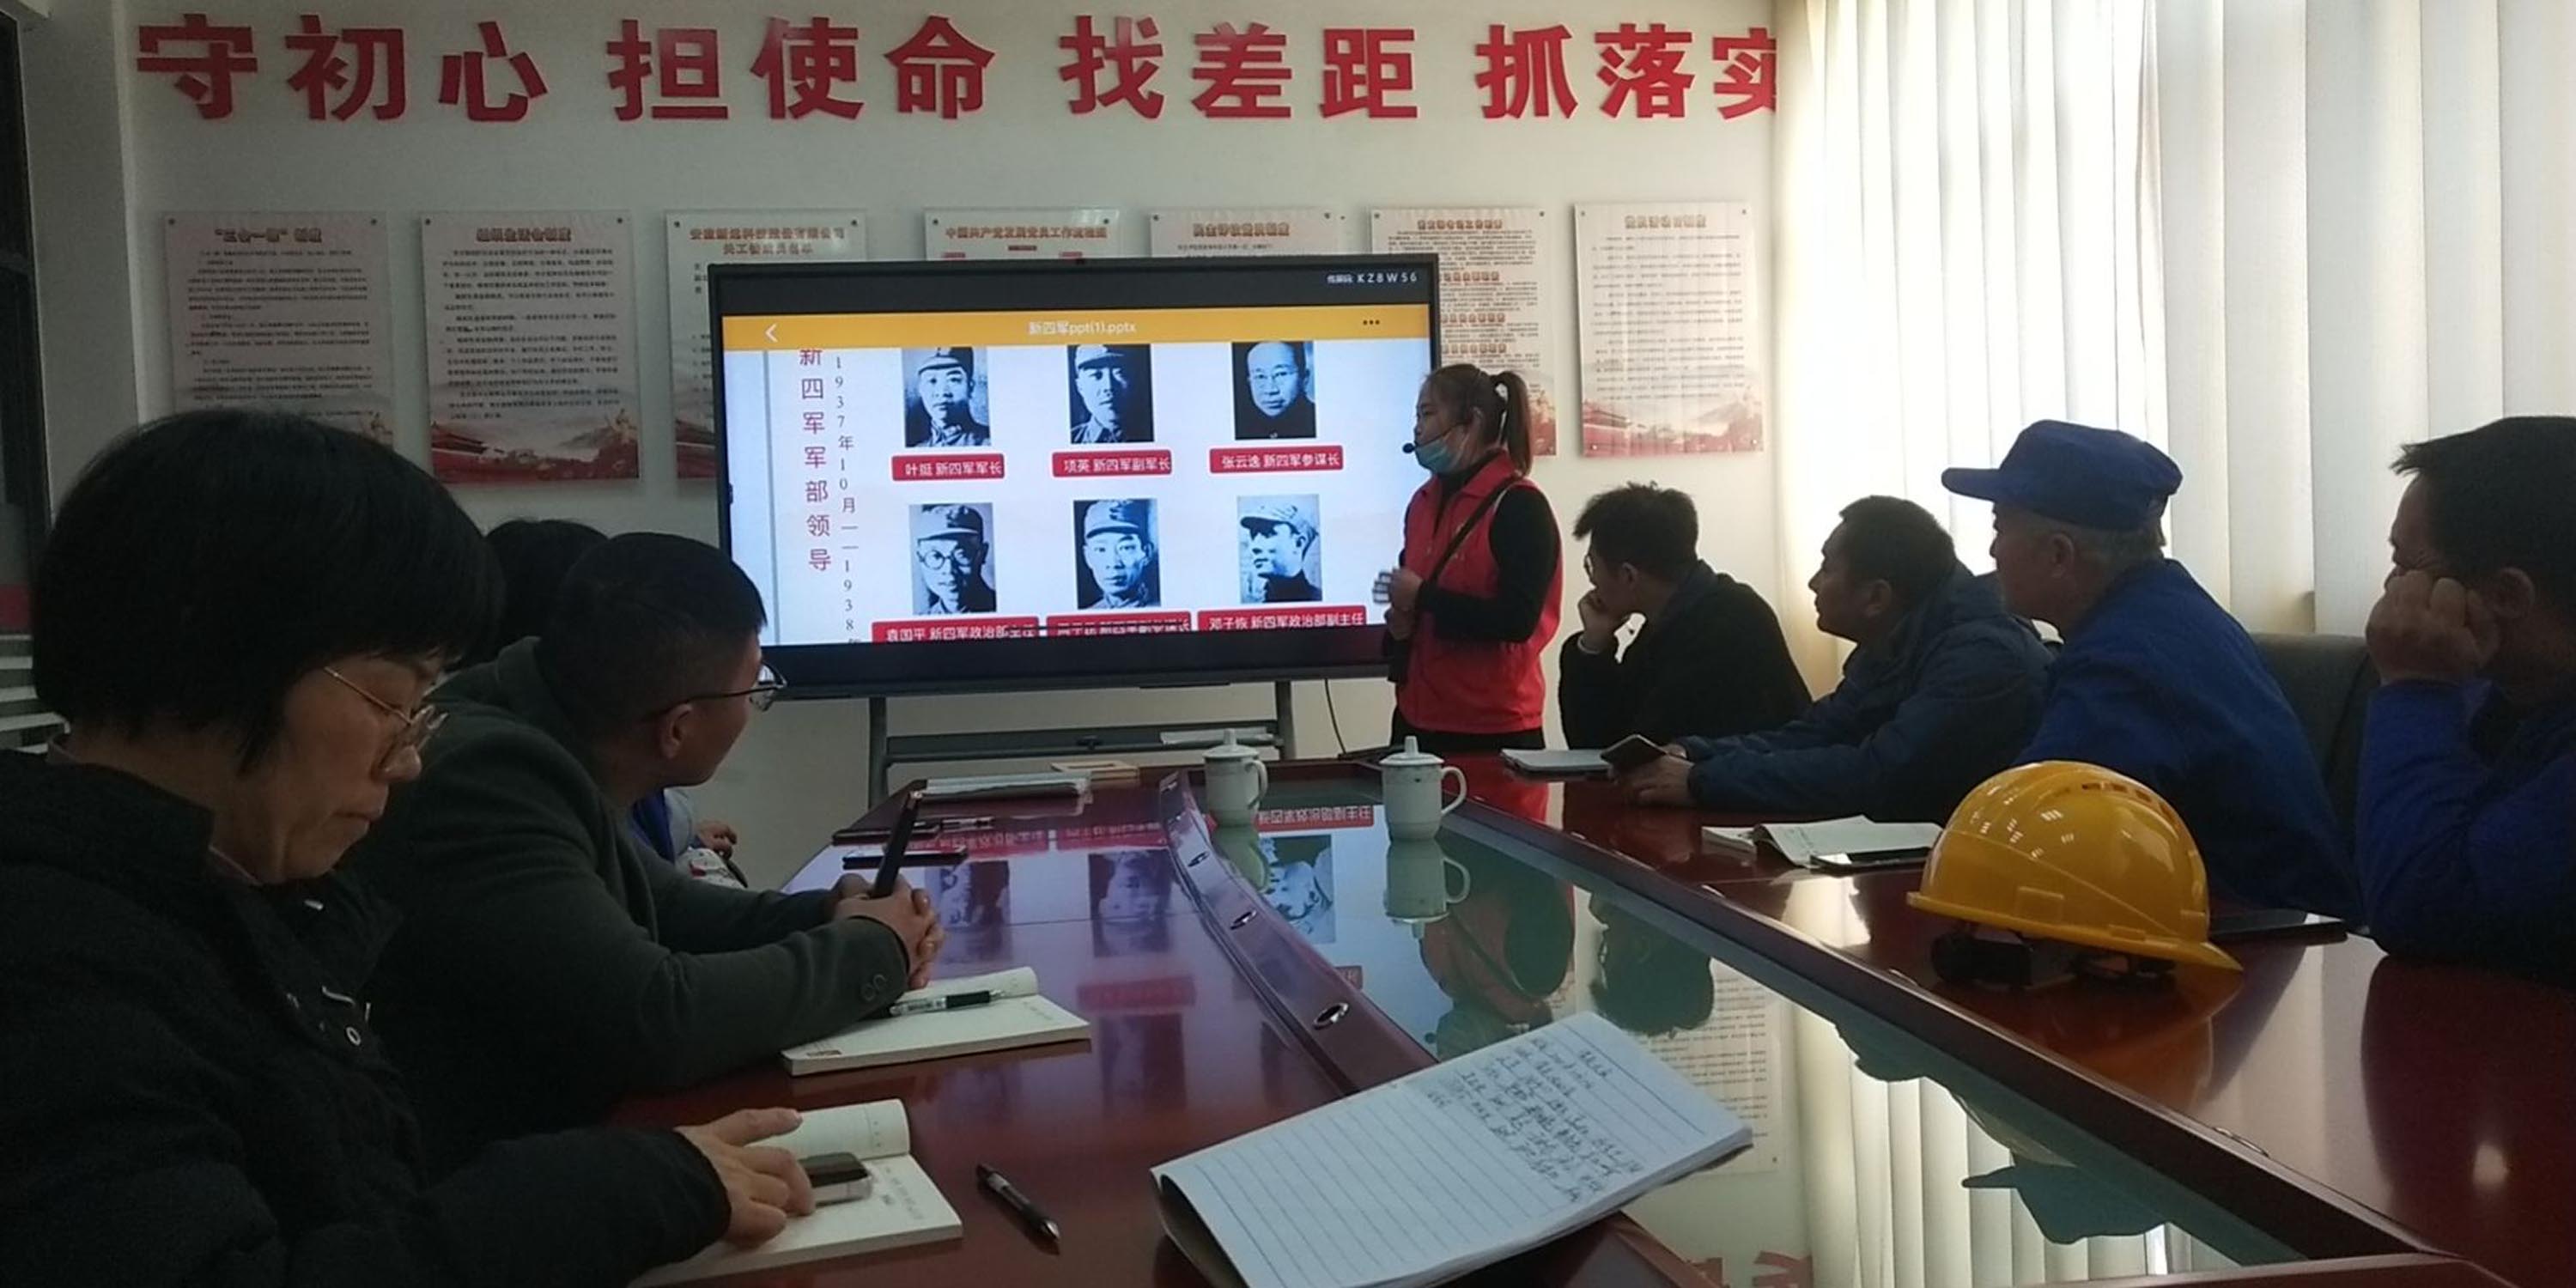 安徽新远科技股份有限公司举行红色文化进企业运动